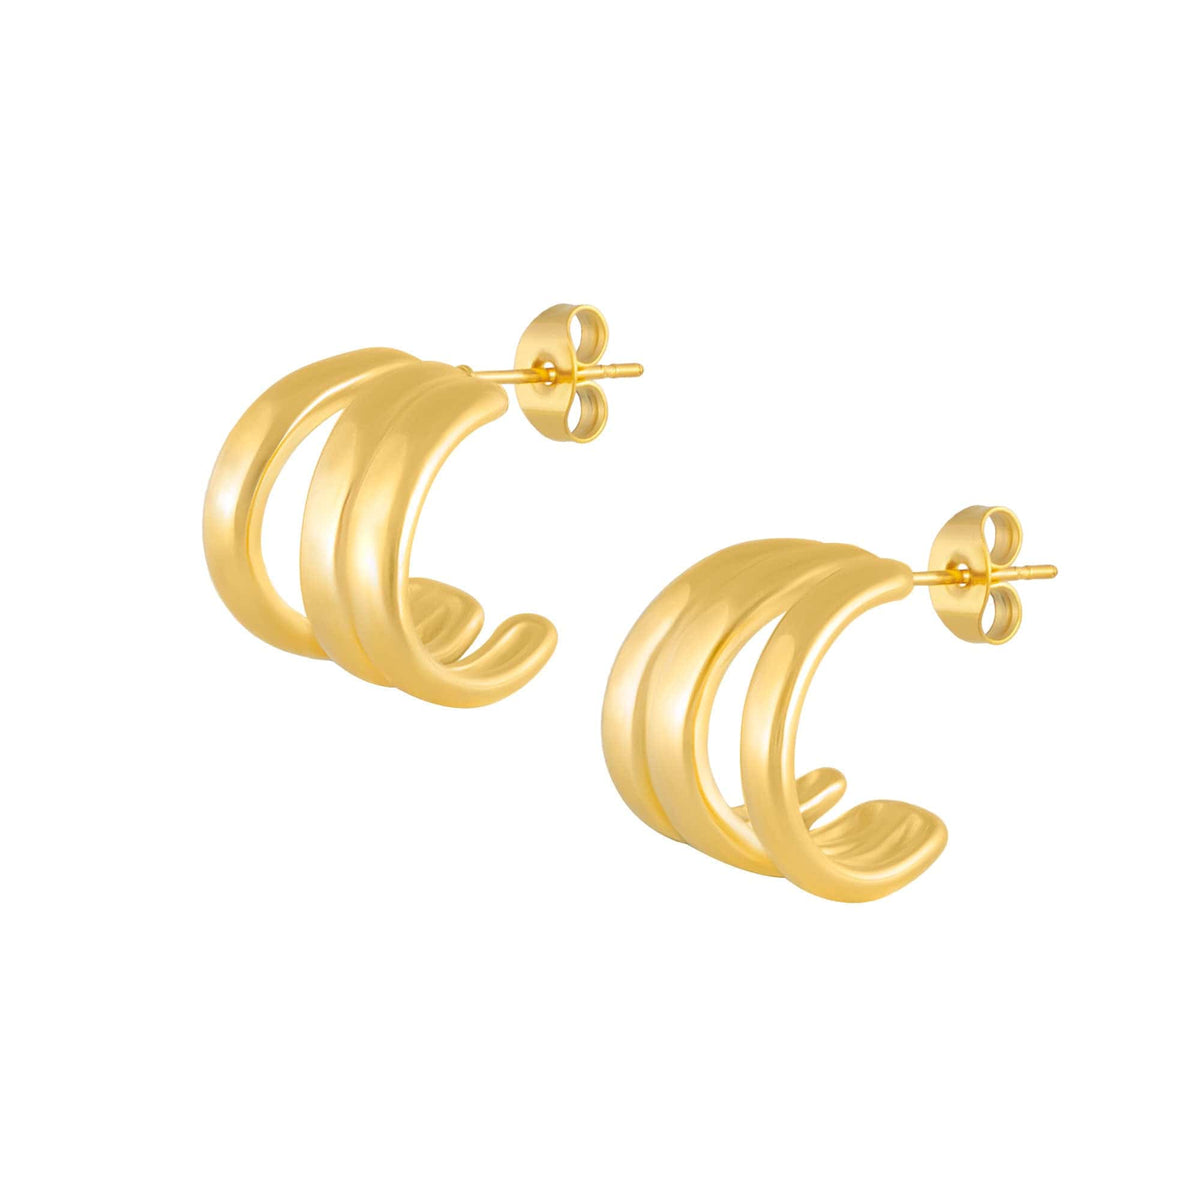 BOHOMOON Stainless Steel Apollo Hoop Earrings Gold